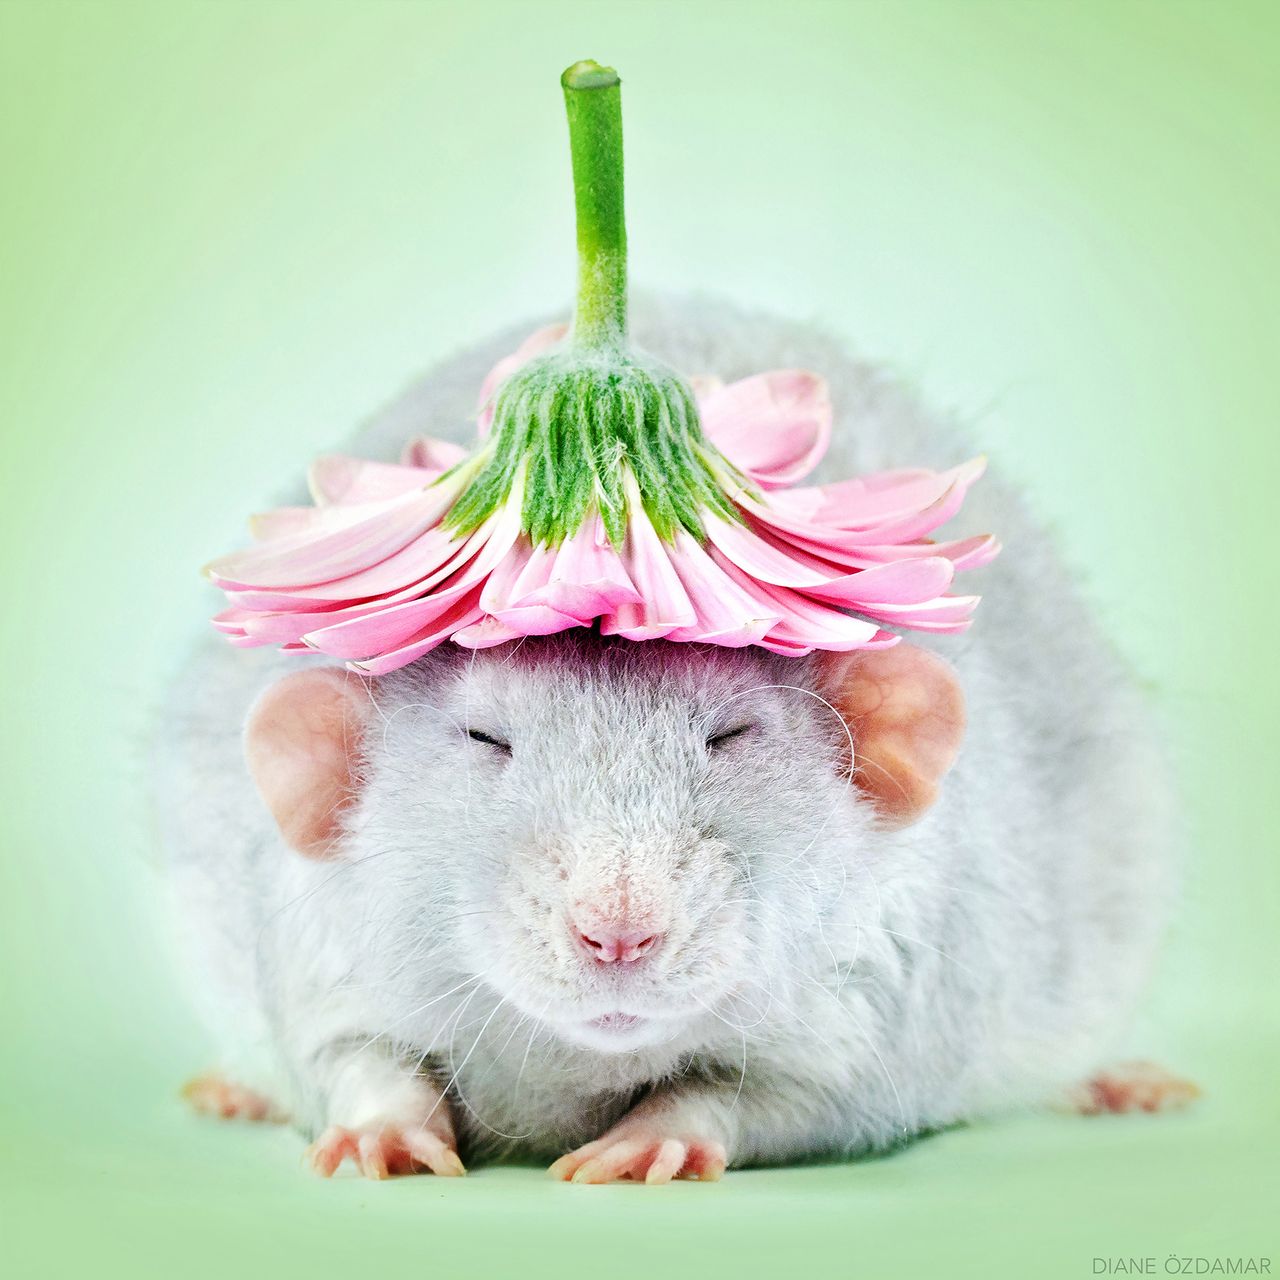 Diane Özdamar tworzy najbardziej urocze zdjęcia szczurów, jakie widzieliśmy